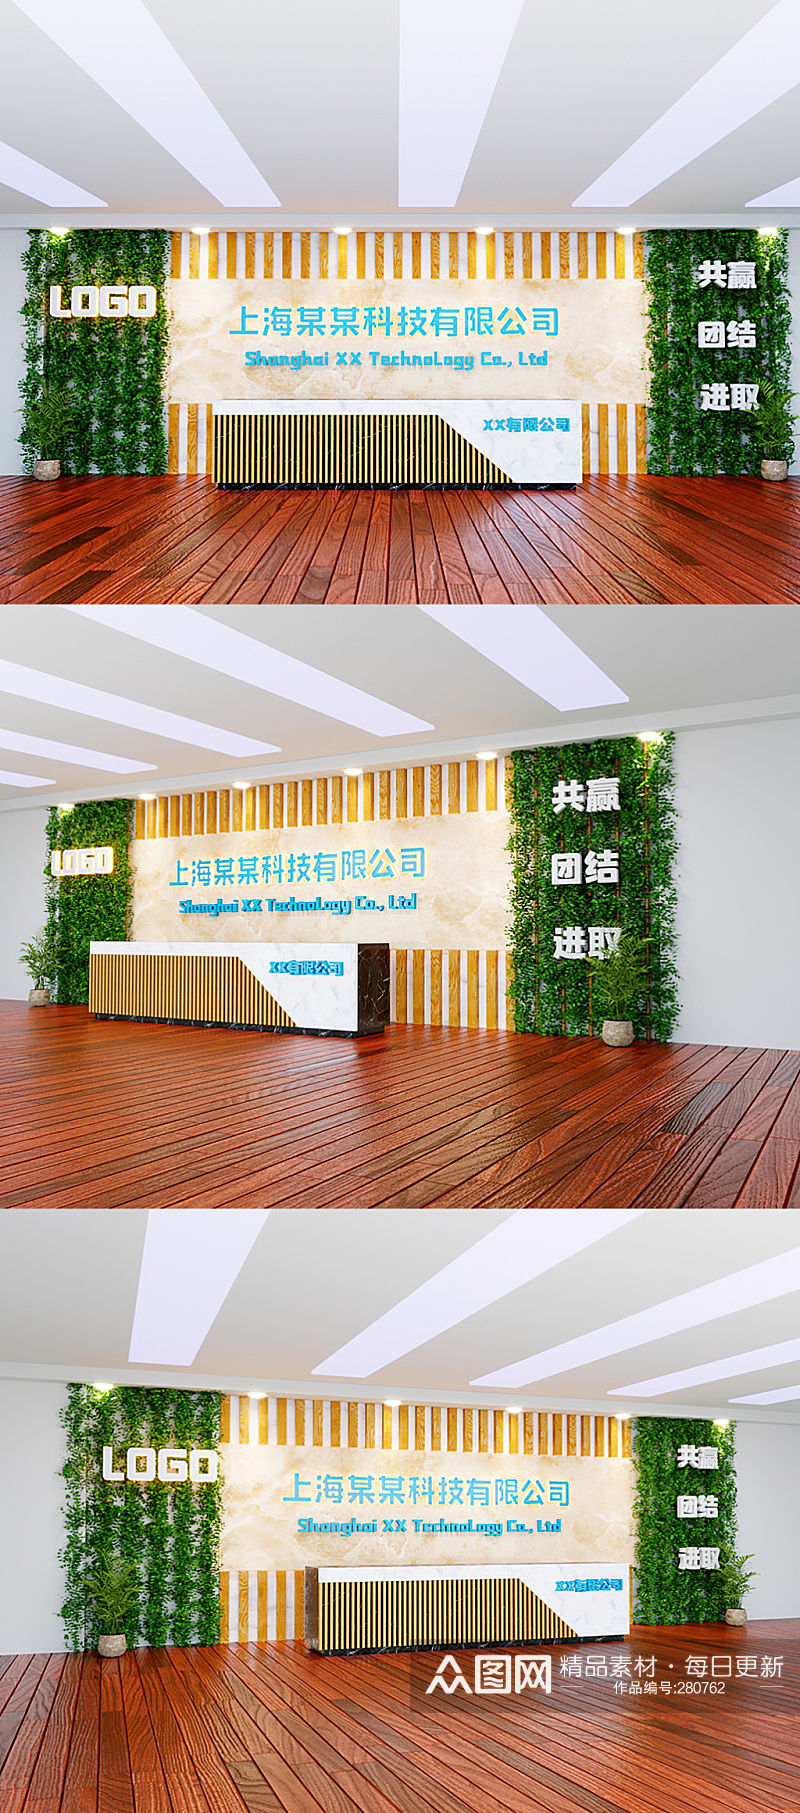 绿植石材公司企业前台设计形象墙素材